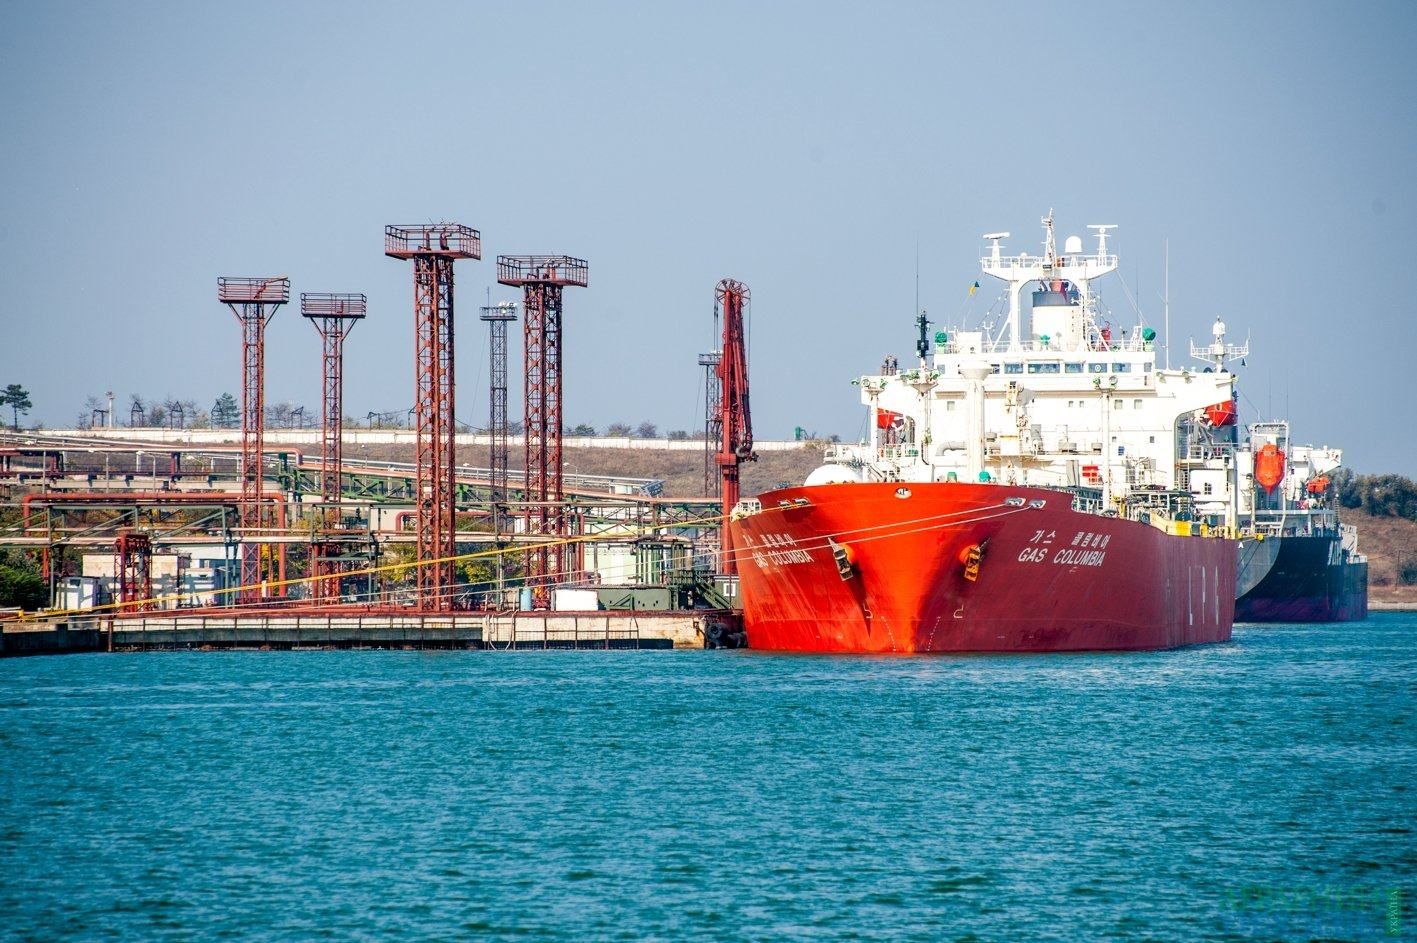 Иностранные судна в украинских портах сталкиваются с нарушением международных стандартов